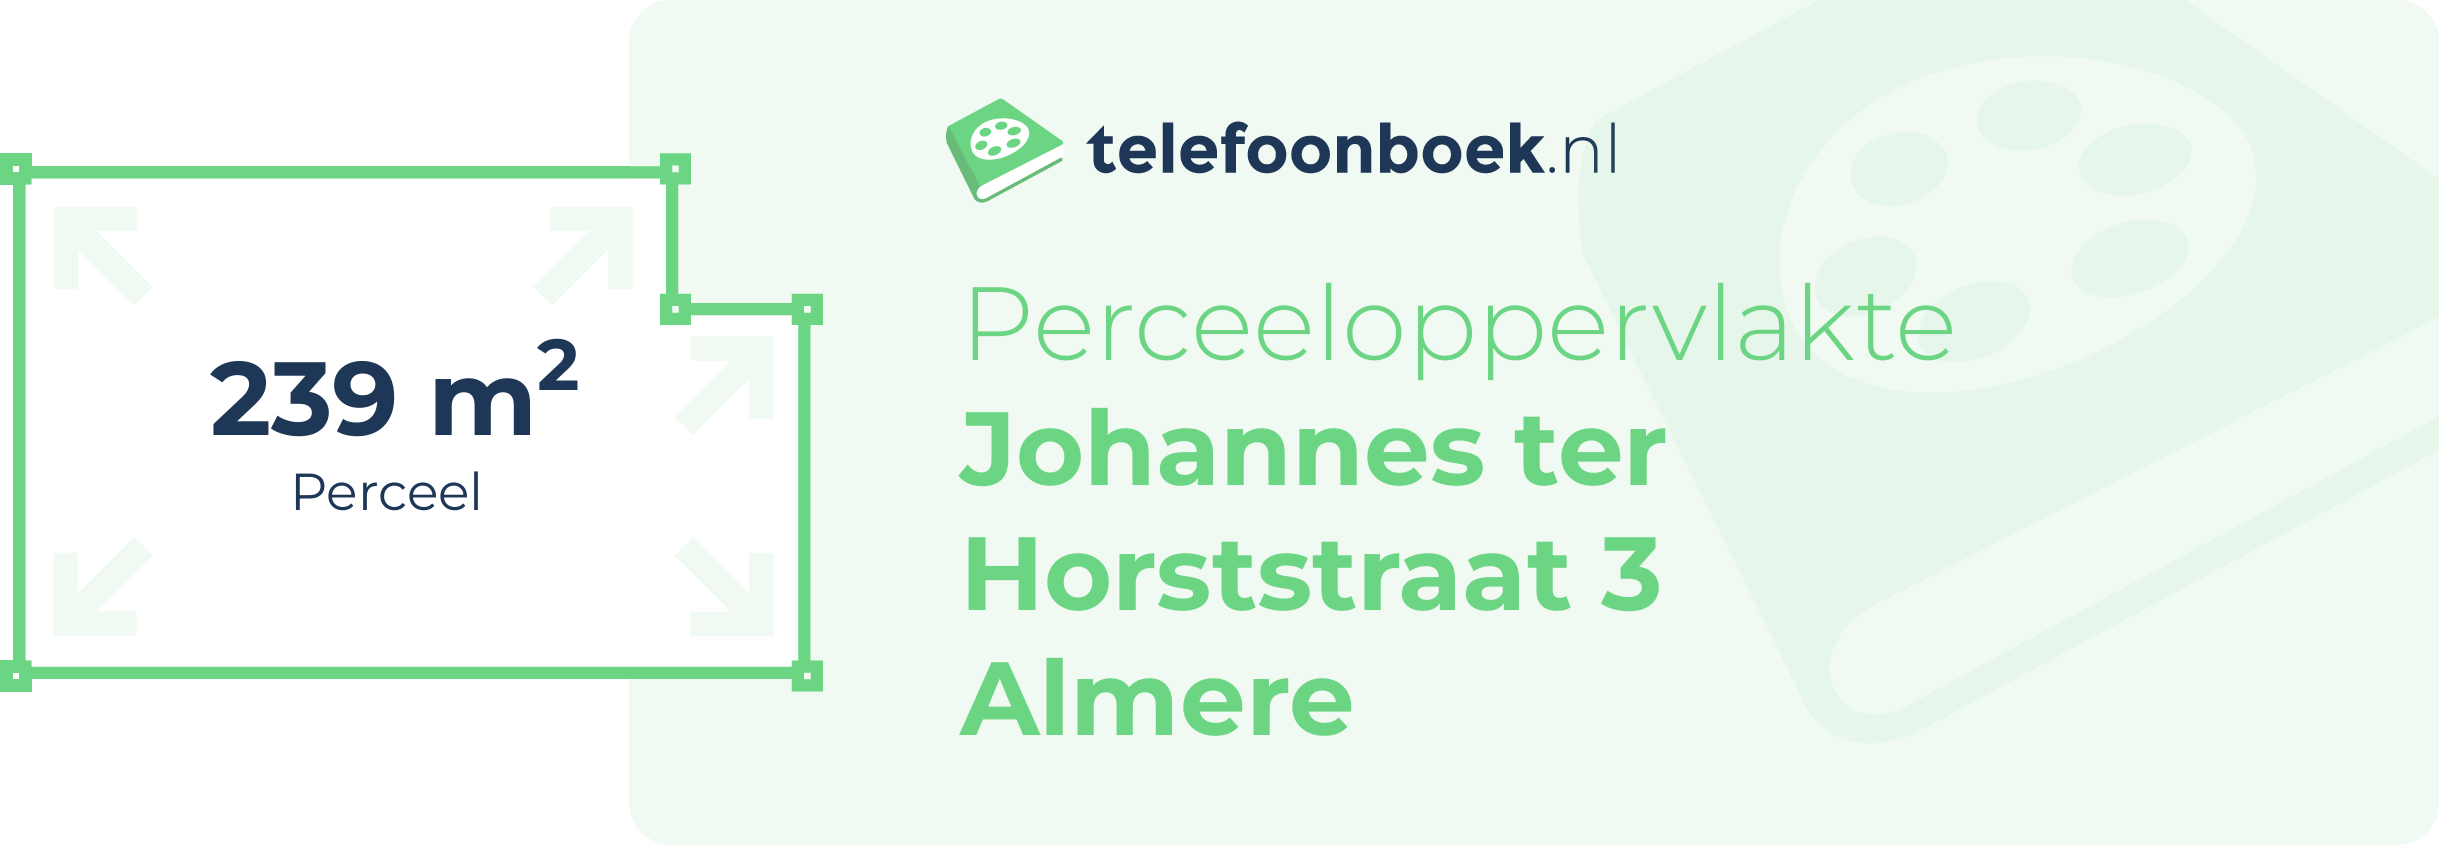 Perceeloppervlakte Johannes Ter Horststraat 3 Almere